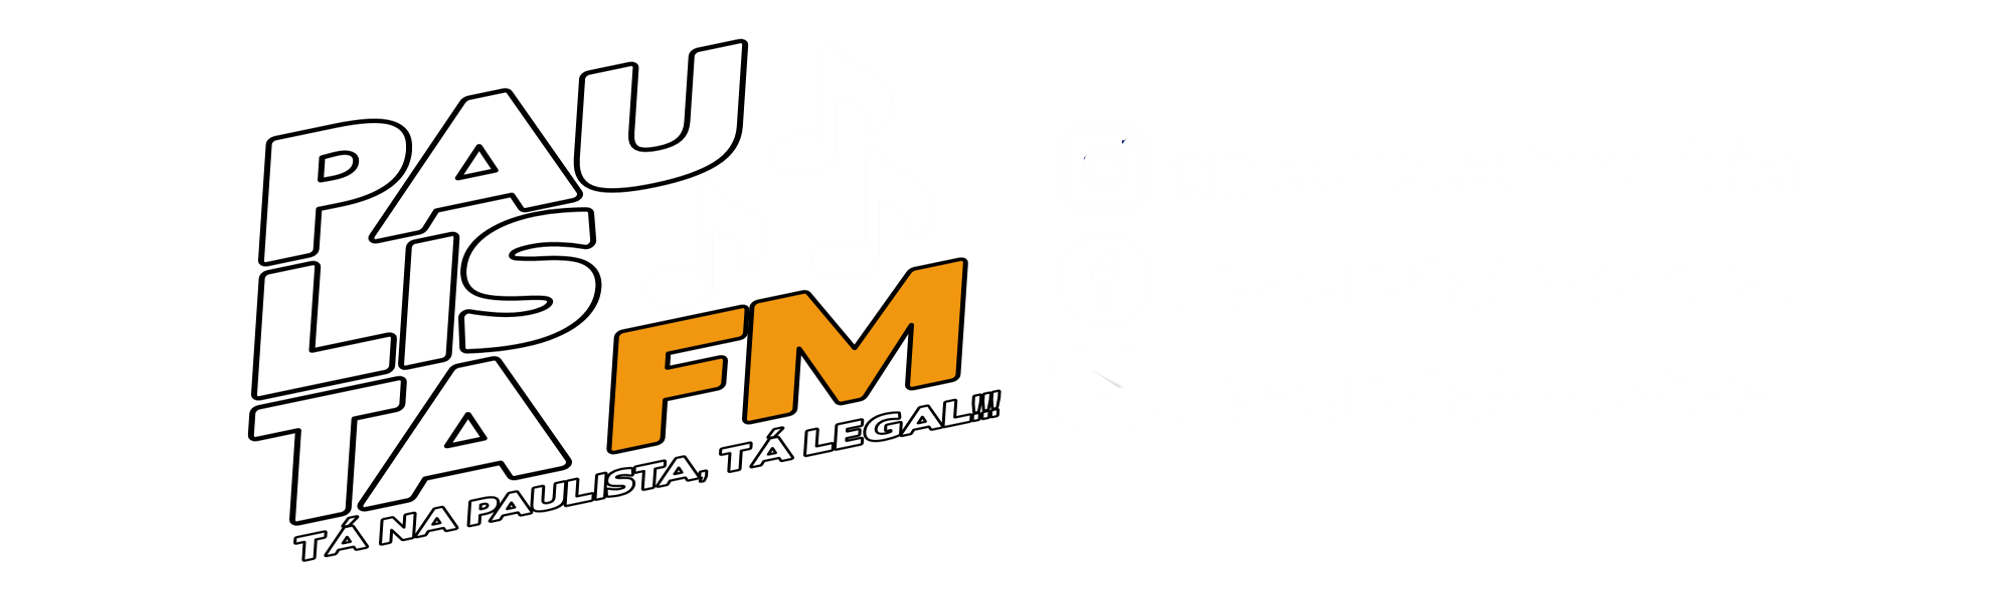 Paulista FM - Tá na Paulista, tá legal!!!